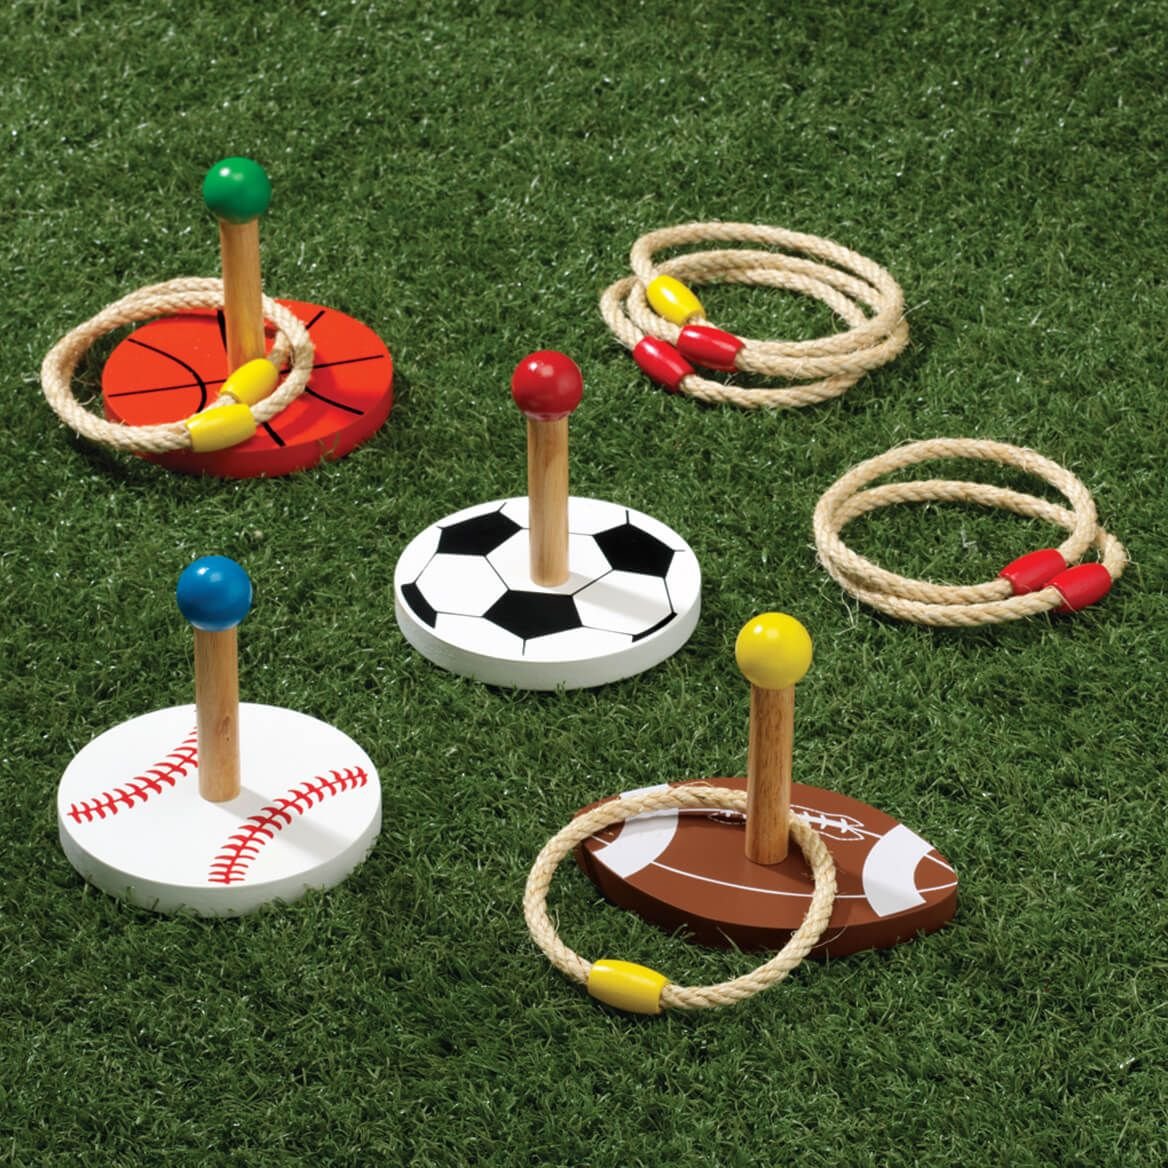 Achetez des équipements de sports de plein air pour enfants sur un tableau d'affichage en Israël.